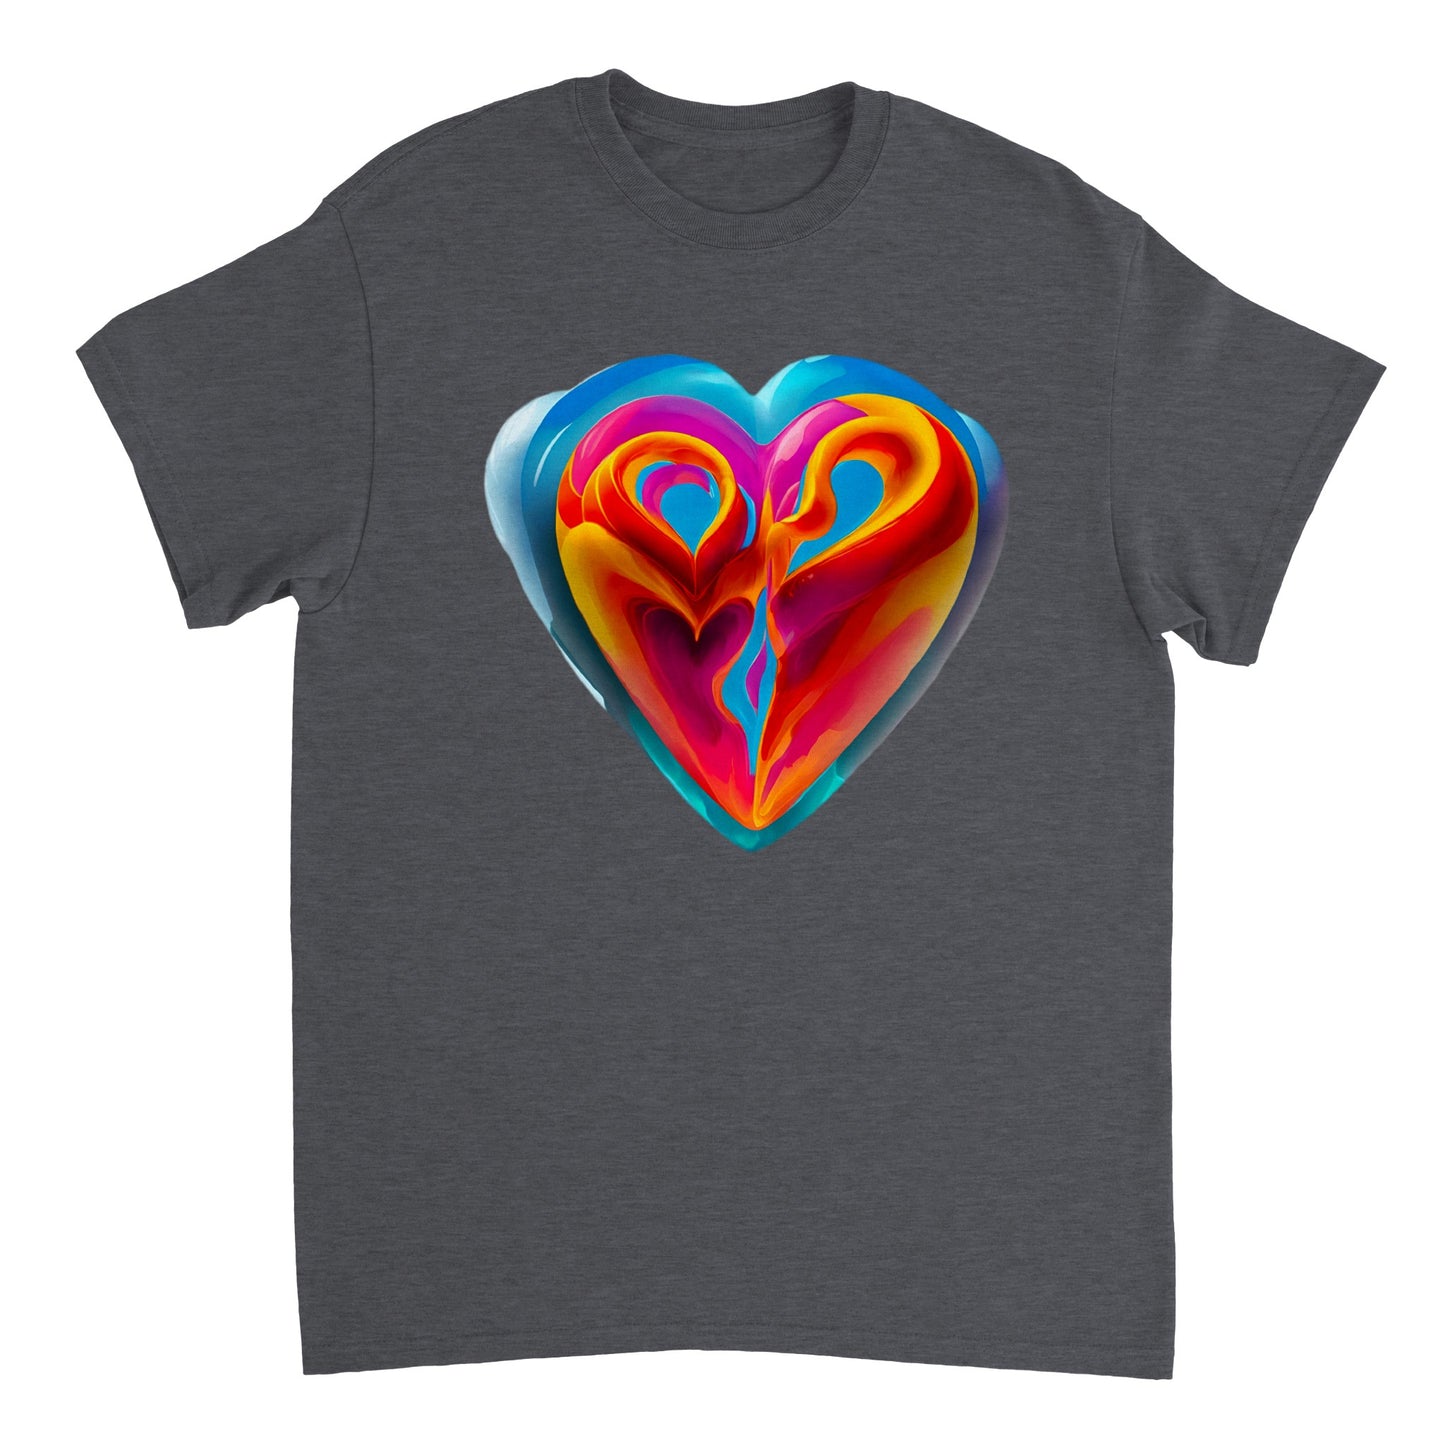 Love Heart - Heavyweight Unisex Crewneck T-shirt 112